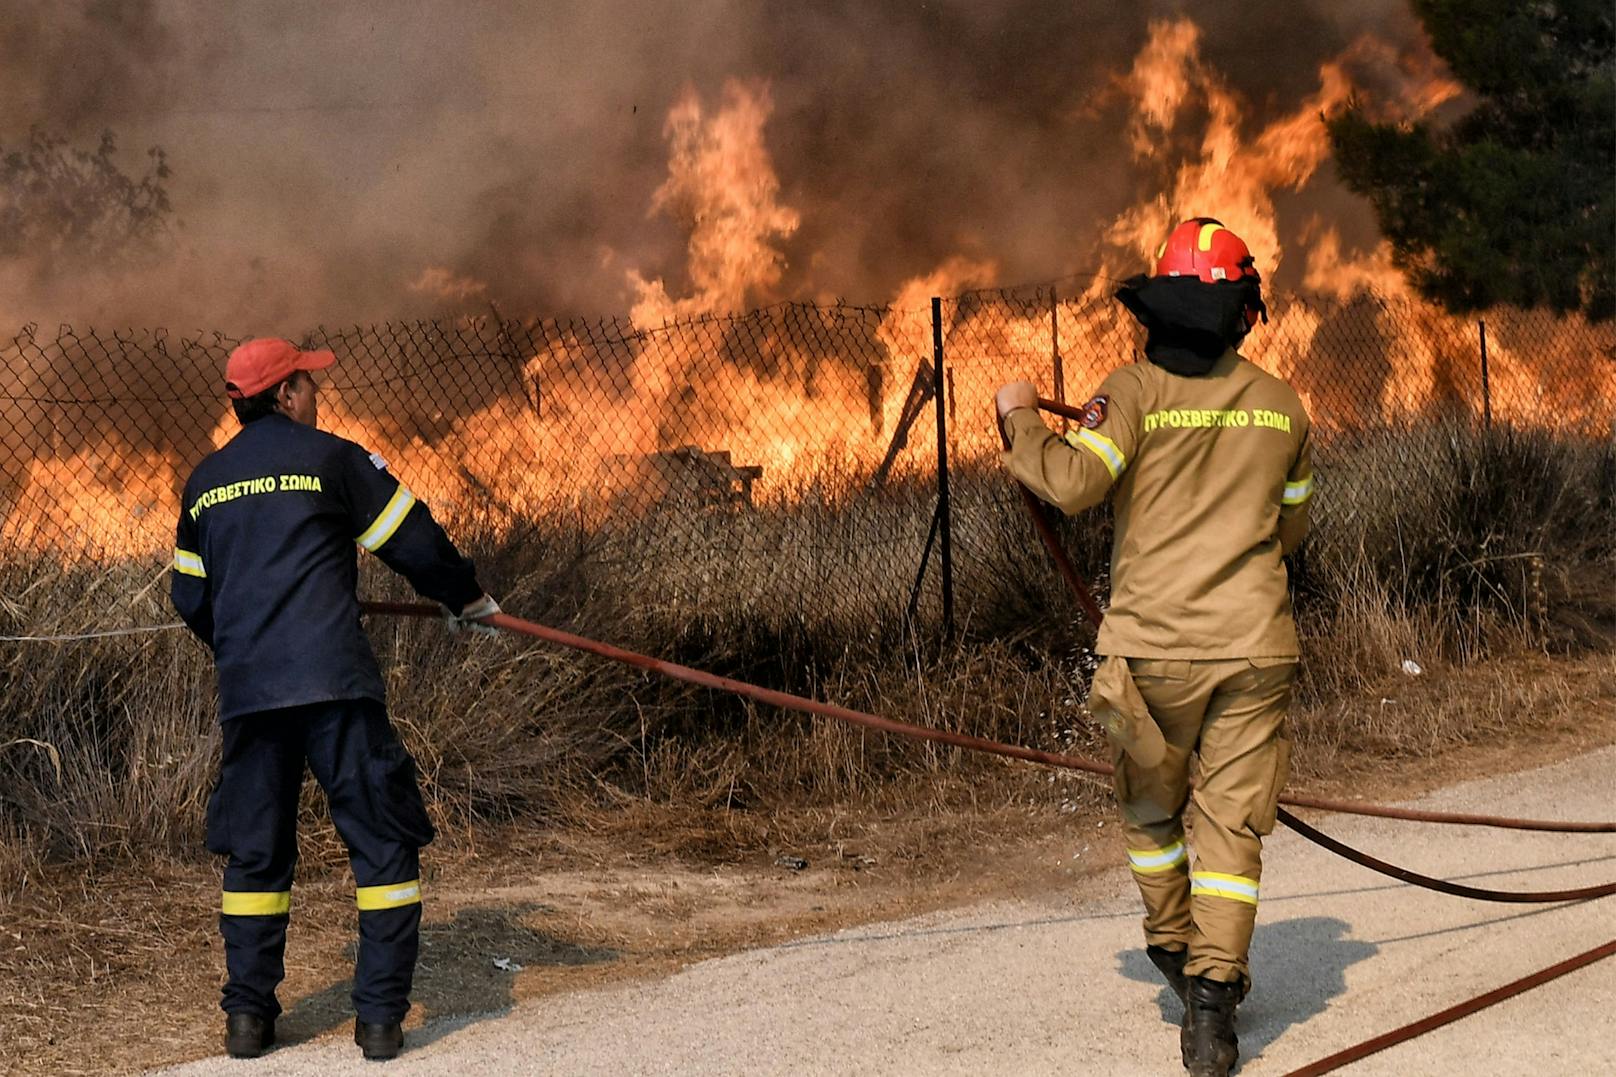 Feuerwehrleute bekämpften den Waldbrand in der Siedlung Irini in der Nähe des Ferienortes Loutraki, etwa 80 Kilometer östlich von Athen.<a href="https://www.heute.at/g/waldbraende-griechenland-100282271?category=/welt&amp;image=1#carousel_100282271"></a>